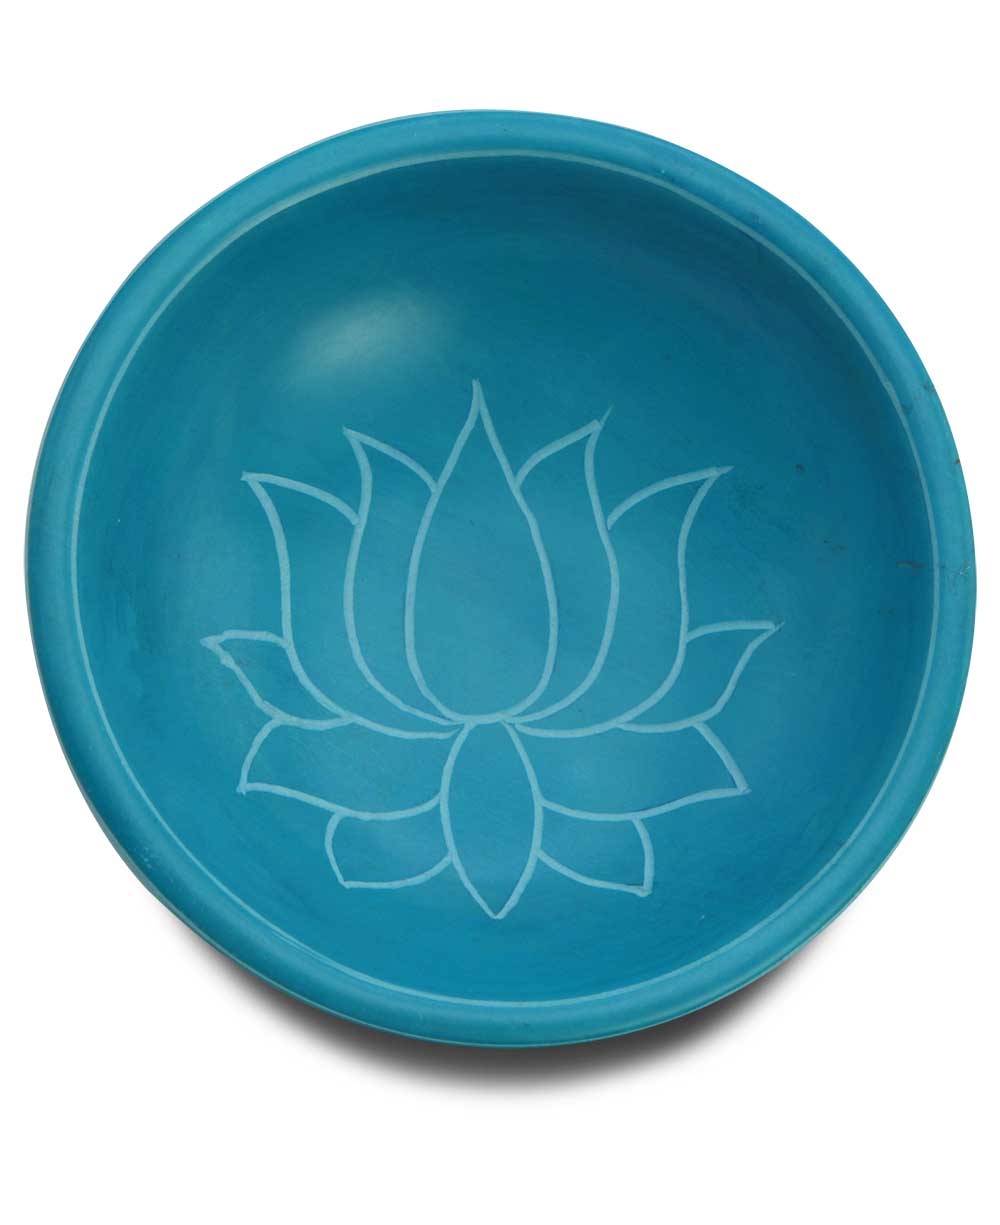 Handmade Small Lotus Bowl/Dish - Bowls